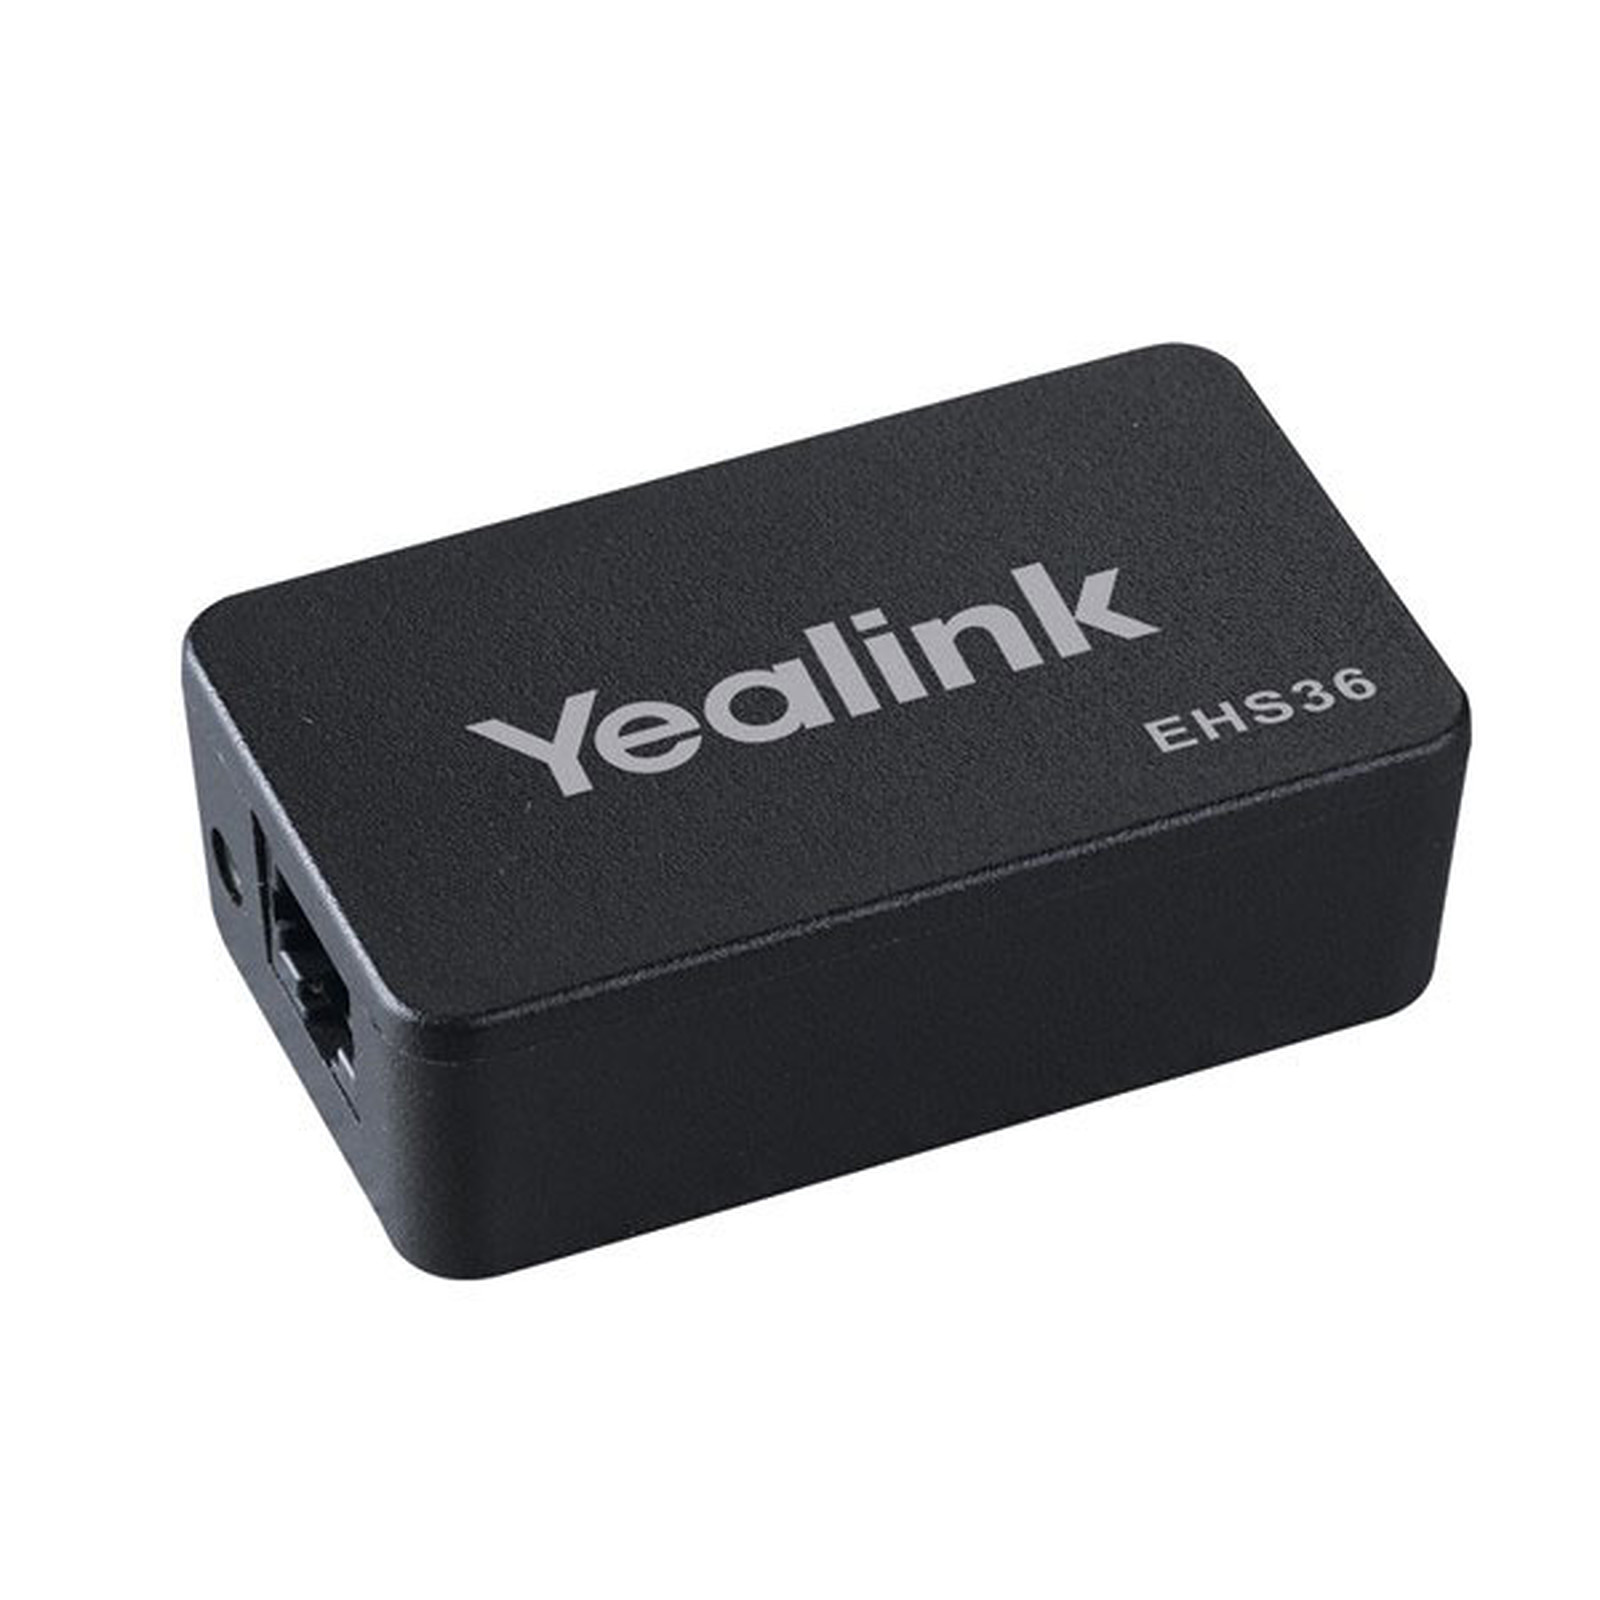 Yealink EHS36 - Accessoires VoIP Yealink